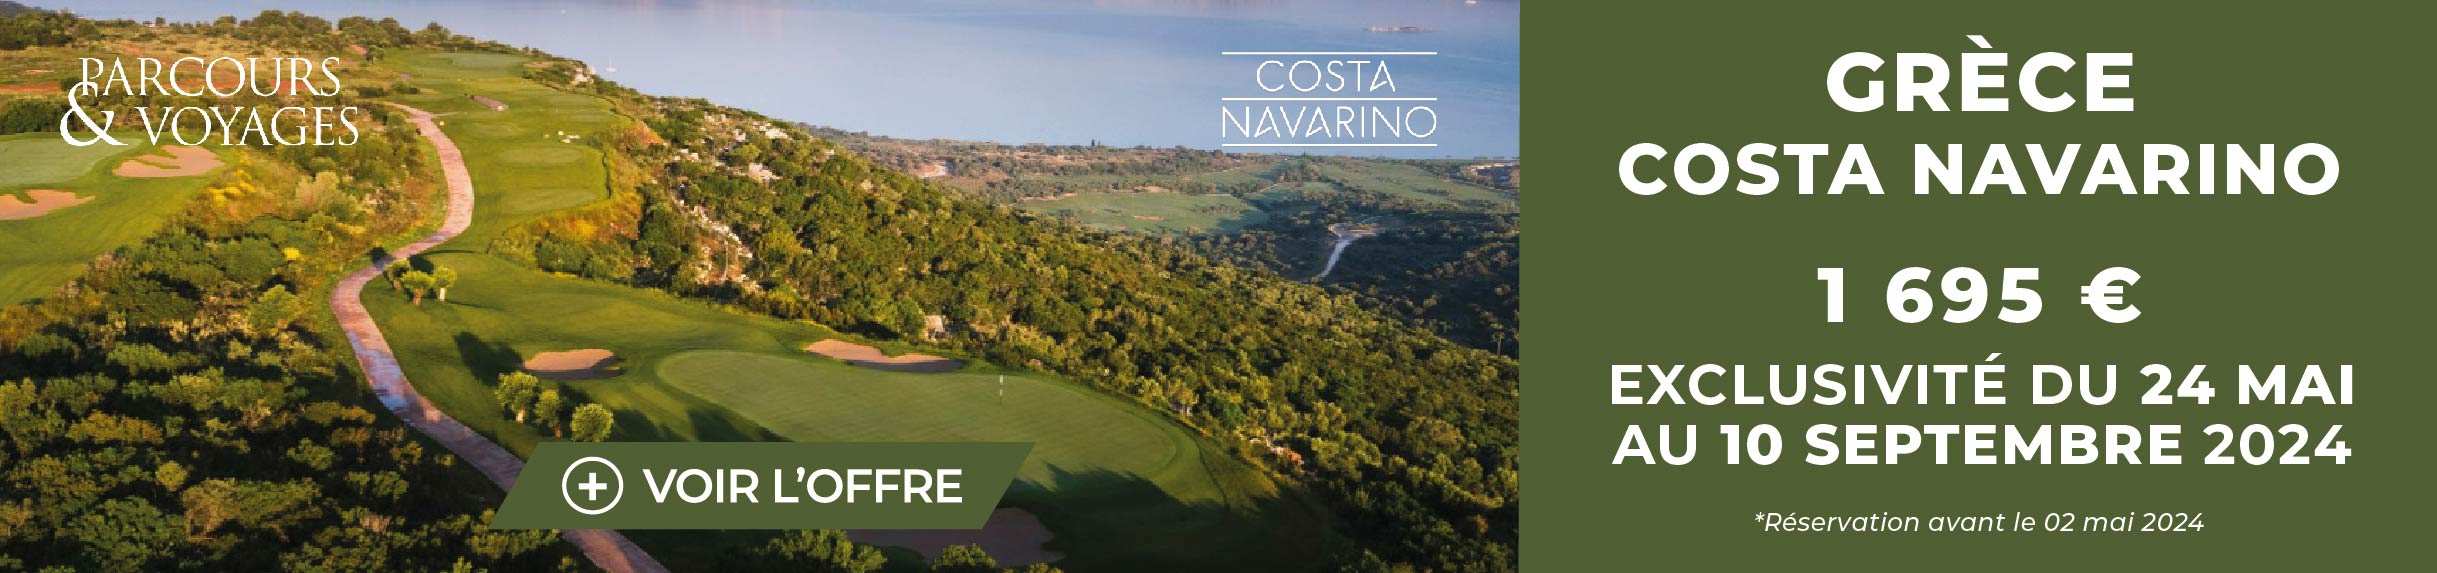 Parcours Voyages D01 2024 – Costa Navarino – Bannière large